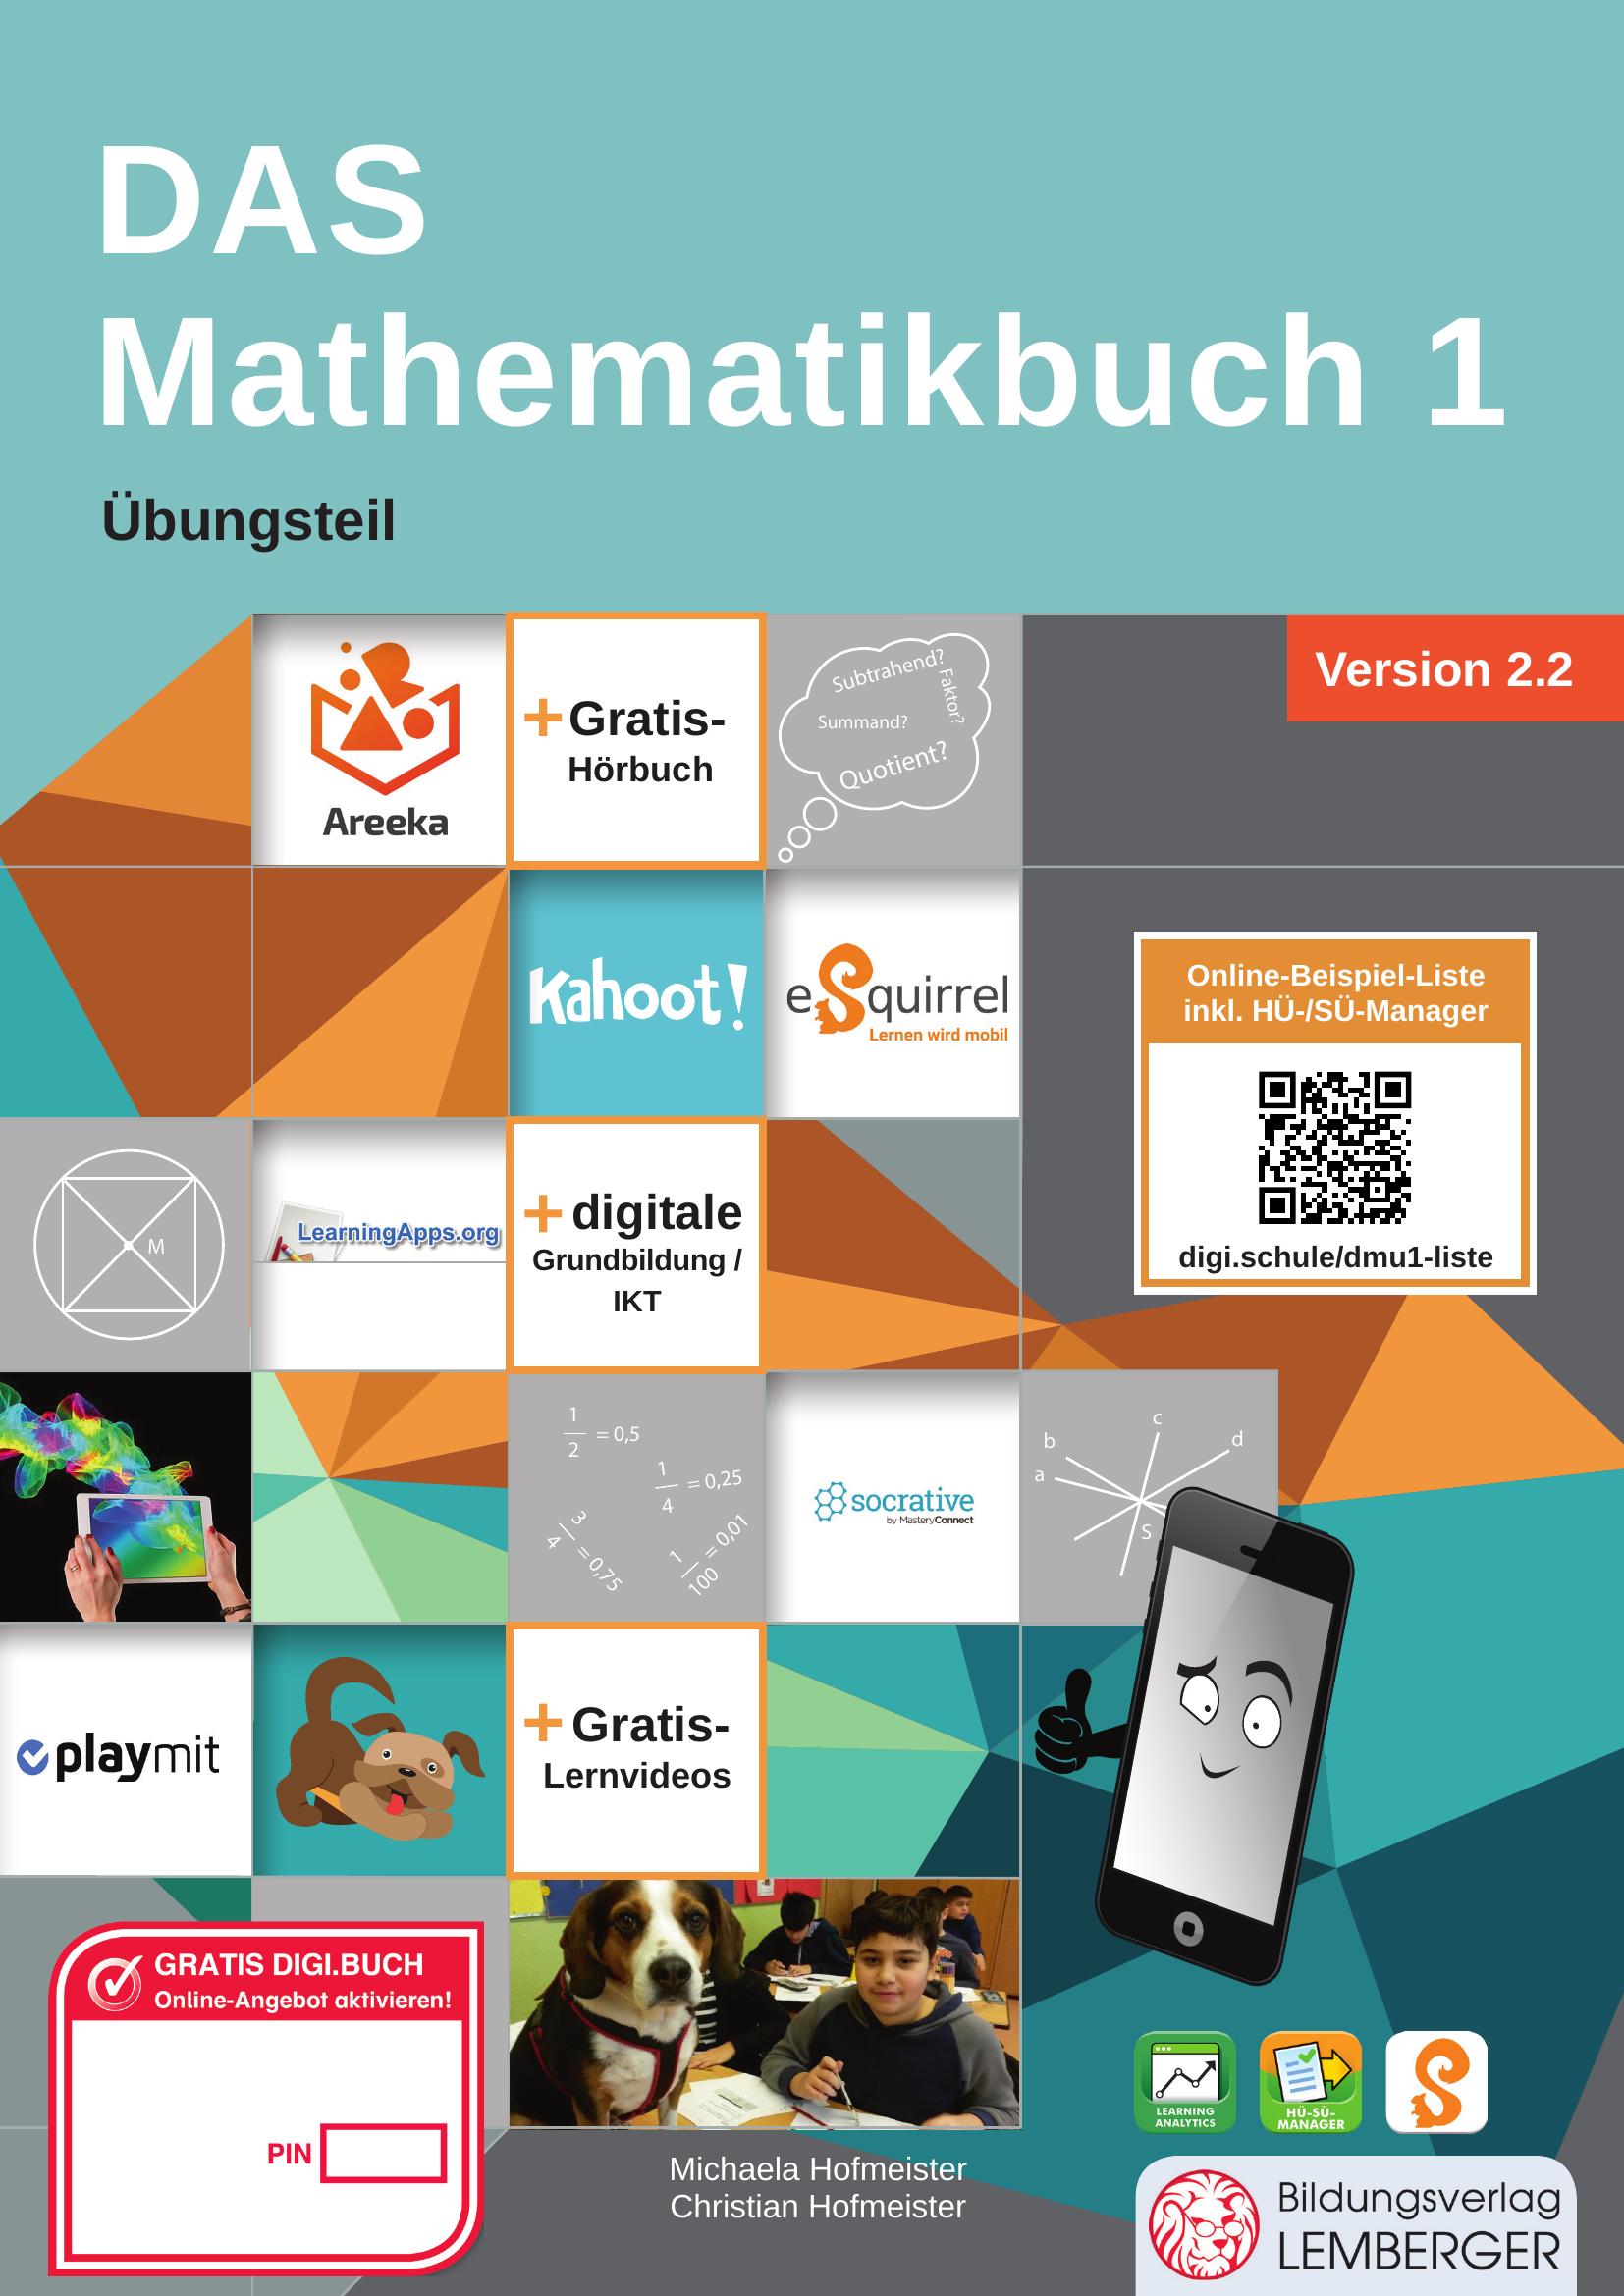 DAS Mathematikbuch 1 - Übungsteil IKT_Version 2.2